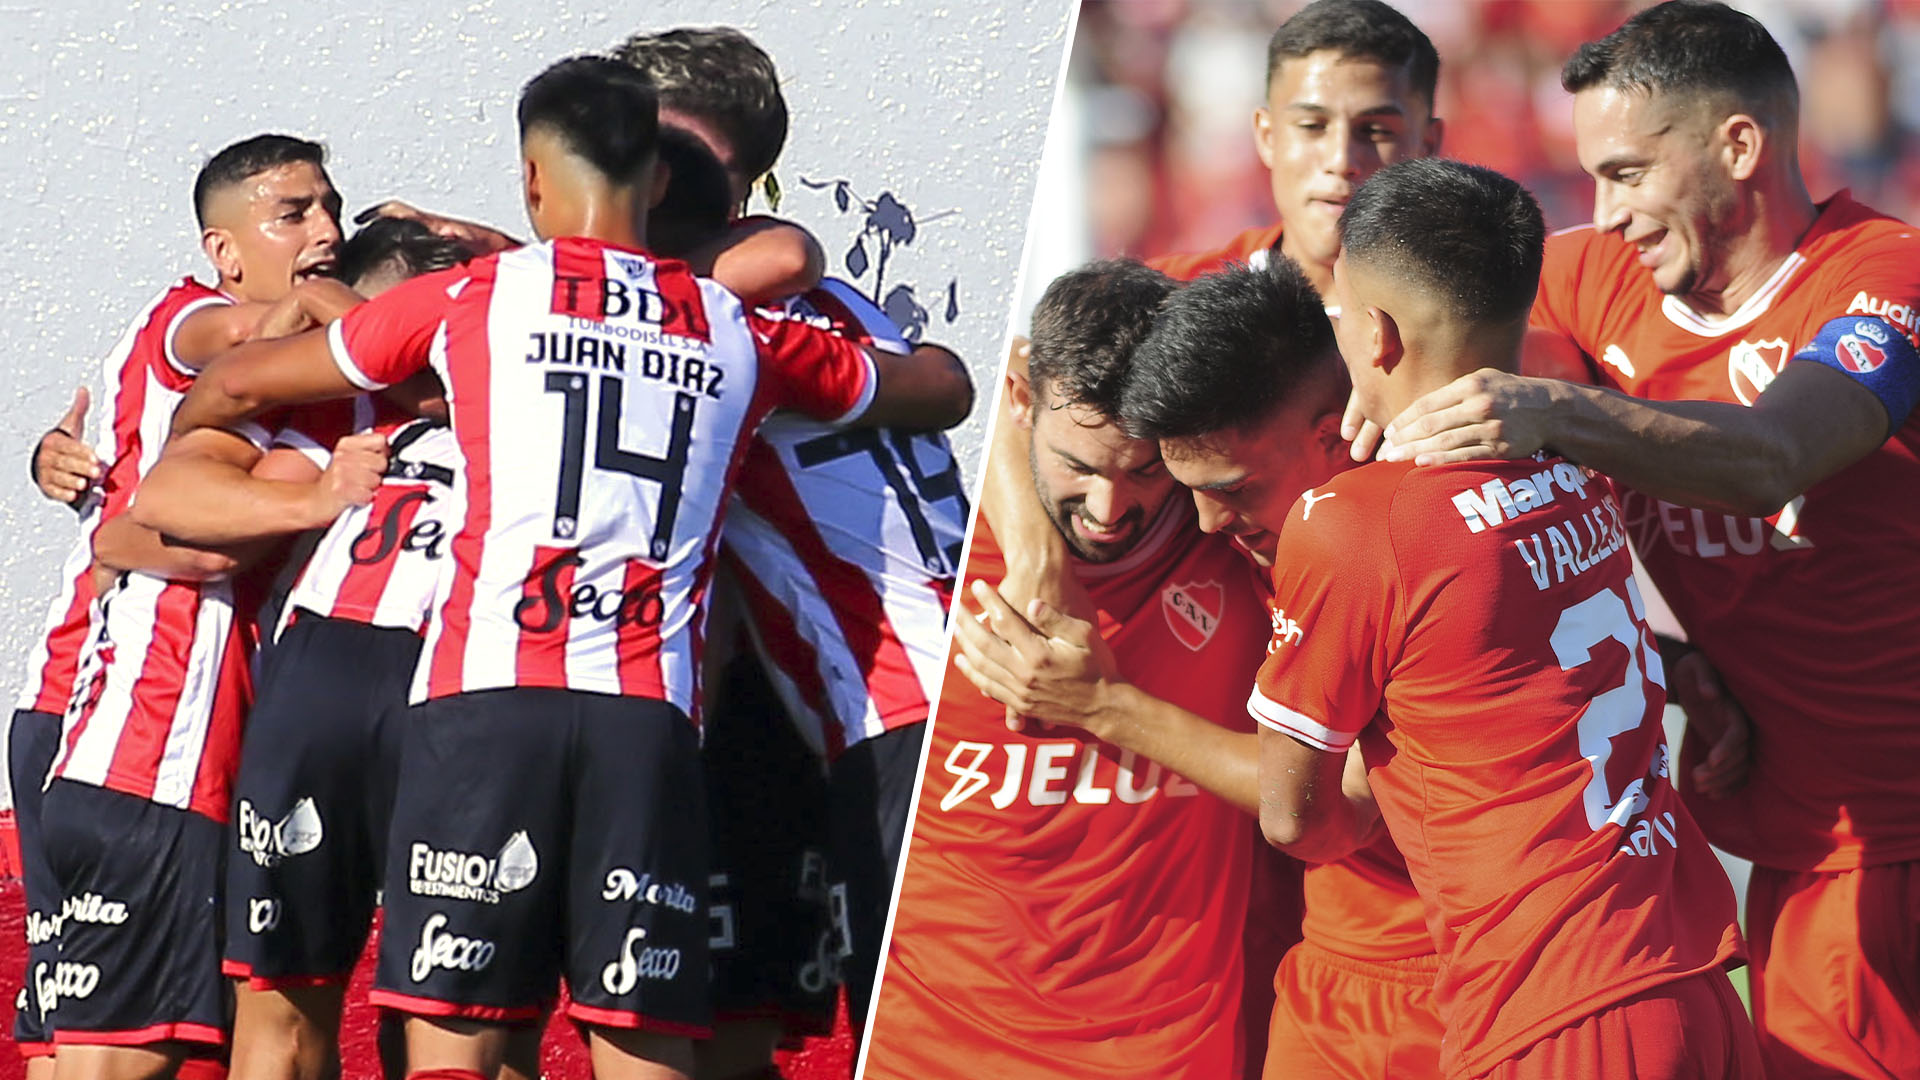 Barracas-Independiente, el primer partido del viernes